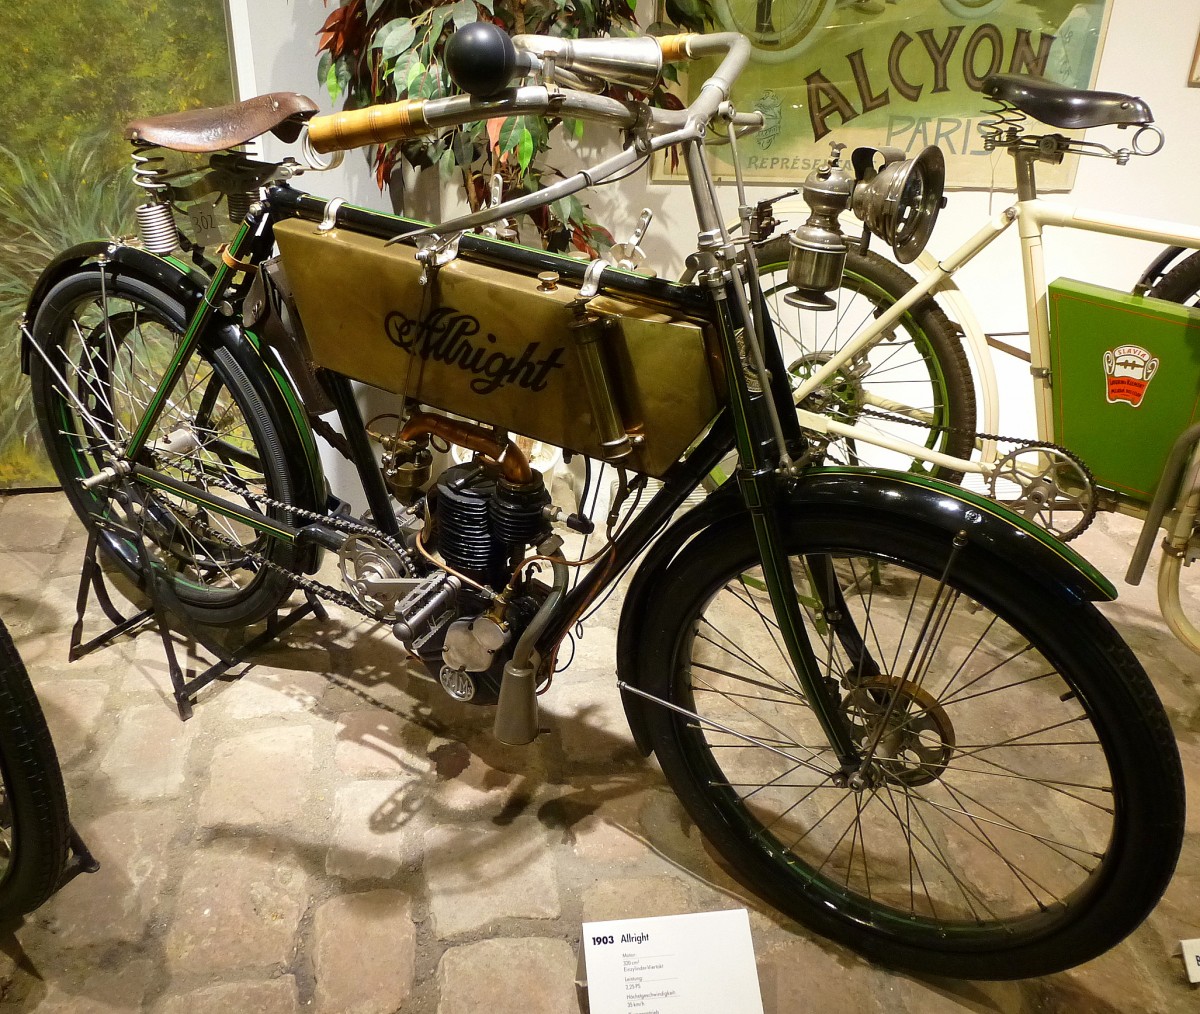 Allright, Oldtimer-Leichtmotorrad der Lindenthaler Metallwerke AG Kln, Baujahr 1903, 1-Zyl.4-Taktmotor mit 320ccm und 2,25PS, Riemenantrieb, NSU-Museum, Sept.2014